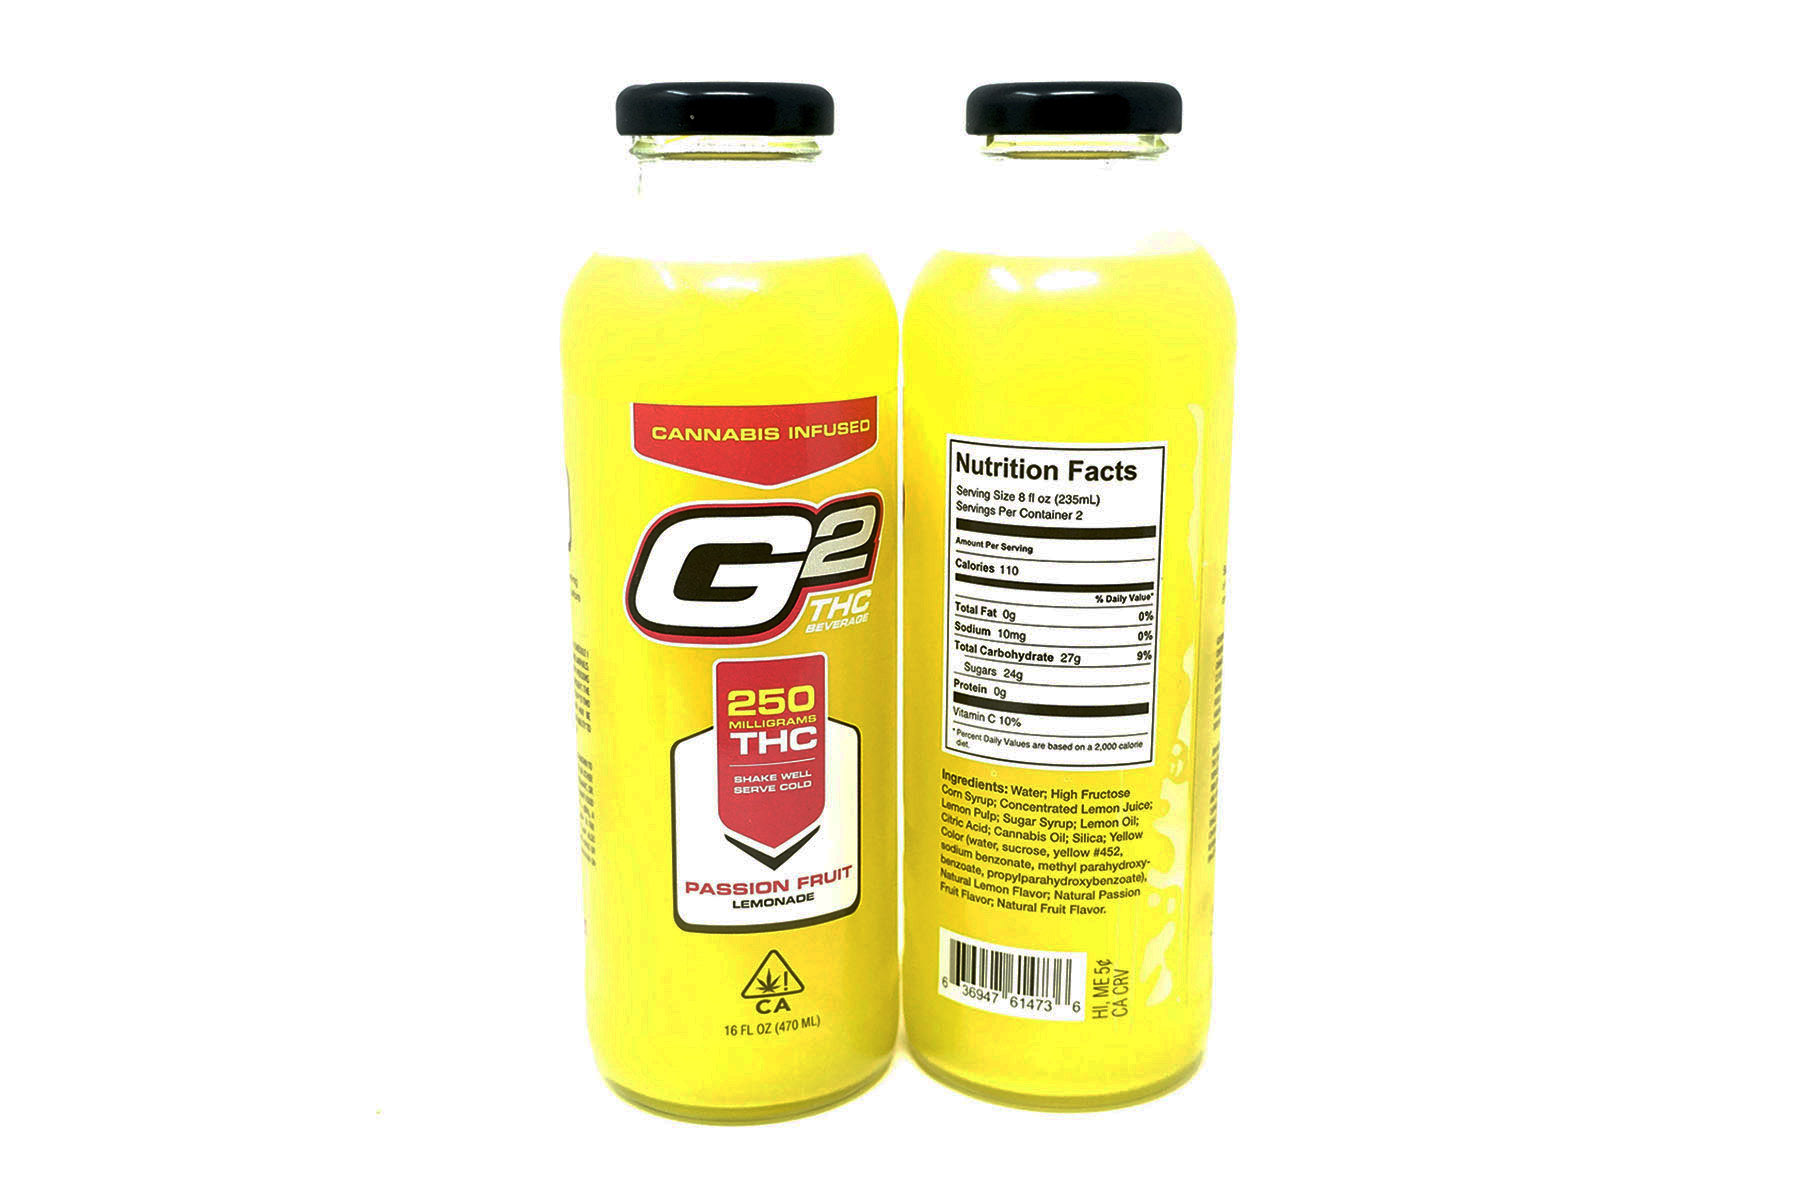 G2 THC half and half Lemonade 250mg